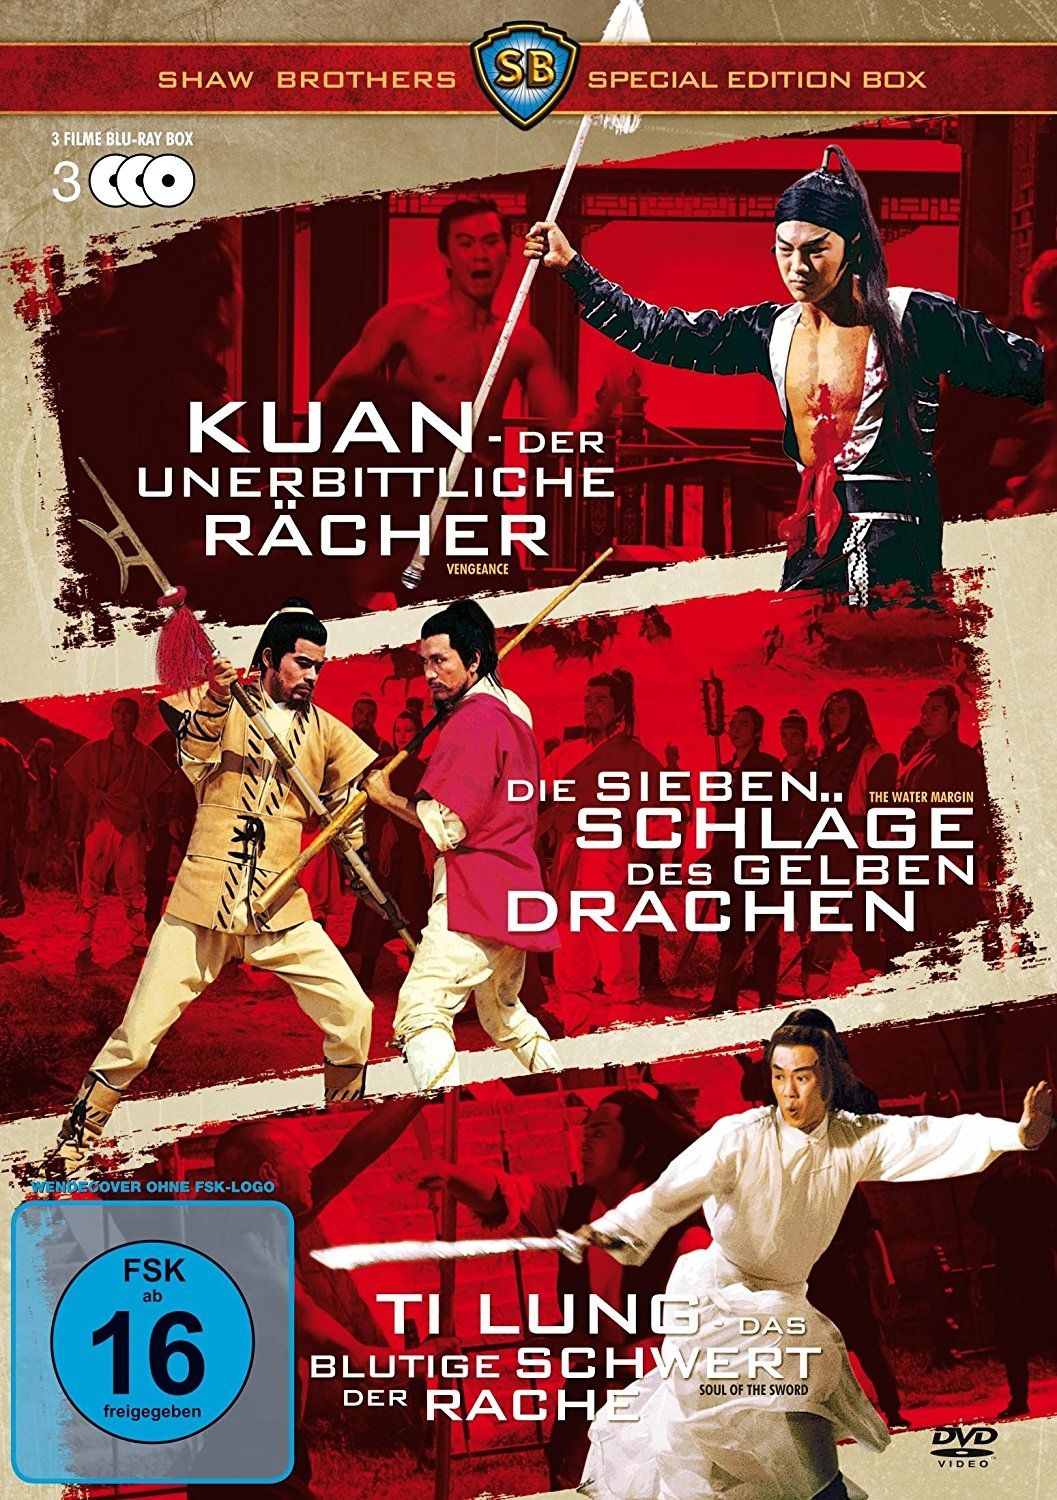 Kuan - Der unerbittliche Rächer /  Die Sieben Schläge des gelben Drachen / Ti Lung - Das blutige Schwert der Rache (Shaw Brothers Special Edition Box 1) (3 Discs)